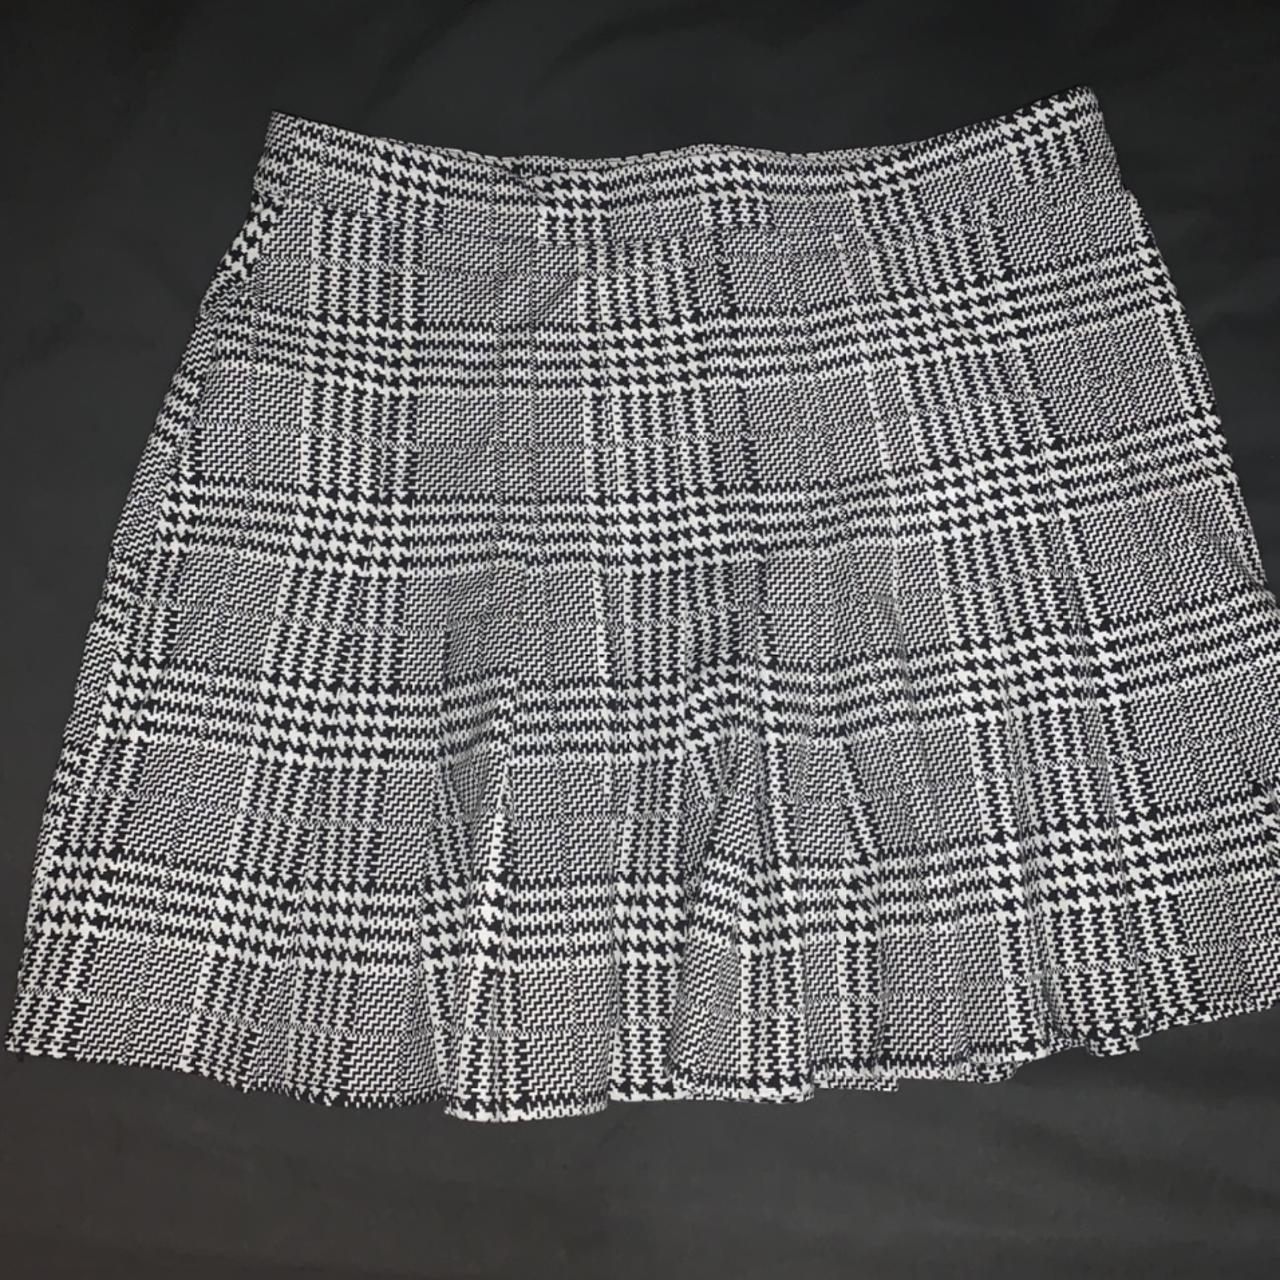 Tweed tennis skirt super cute never worn... - Depop